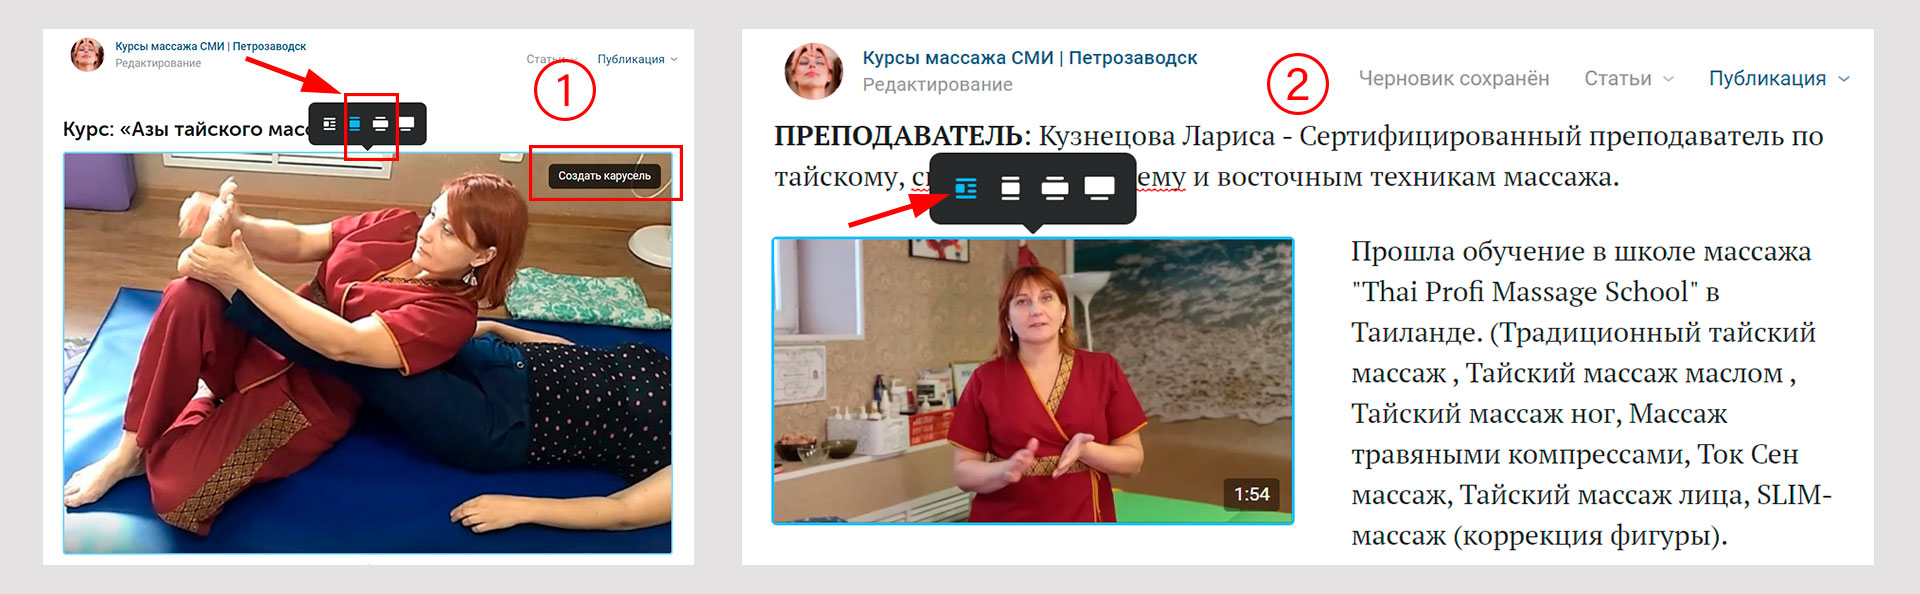 Оформление фотографий в редакторе ВКонтакте «Статья».